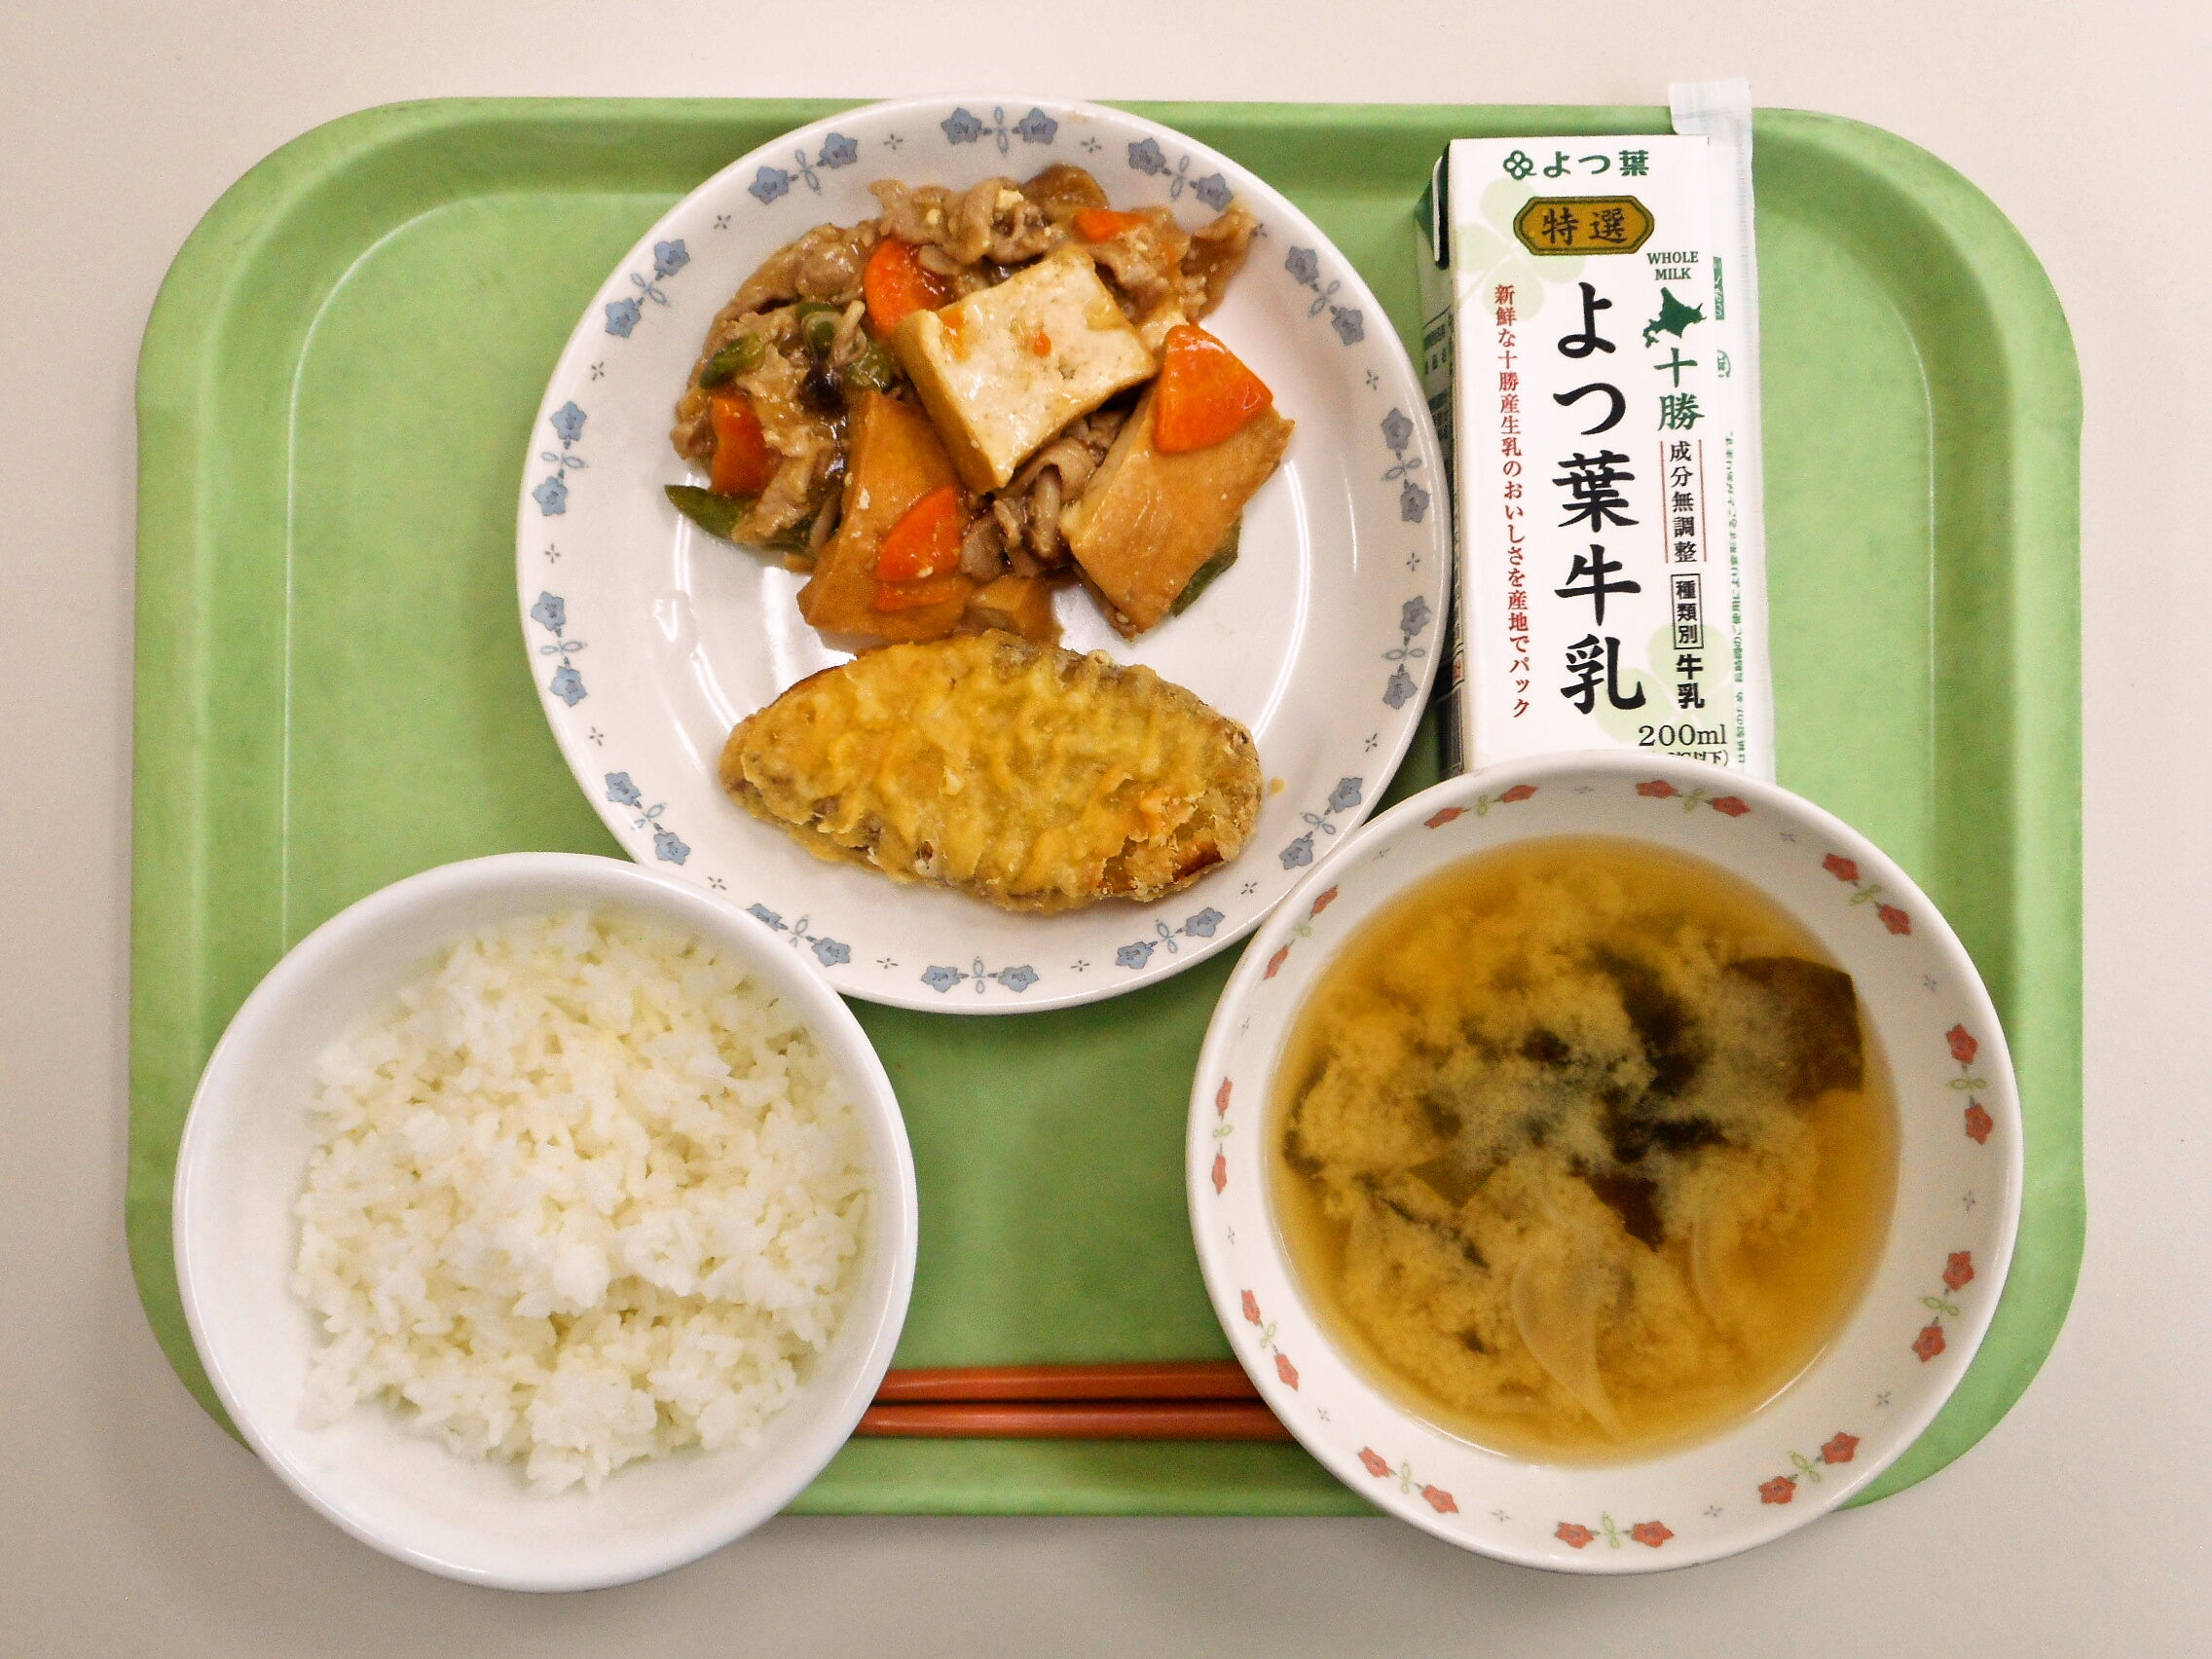 ごはん、みそ汁（玉ねぎ・わかめ）、さつまいも天ぷら、肉豆腐、牛乳